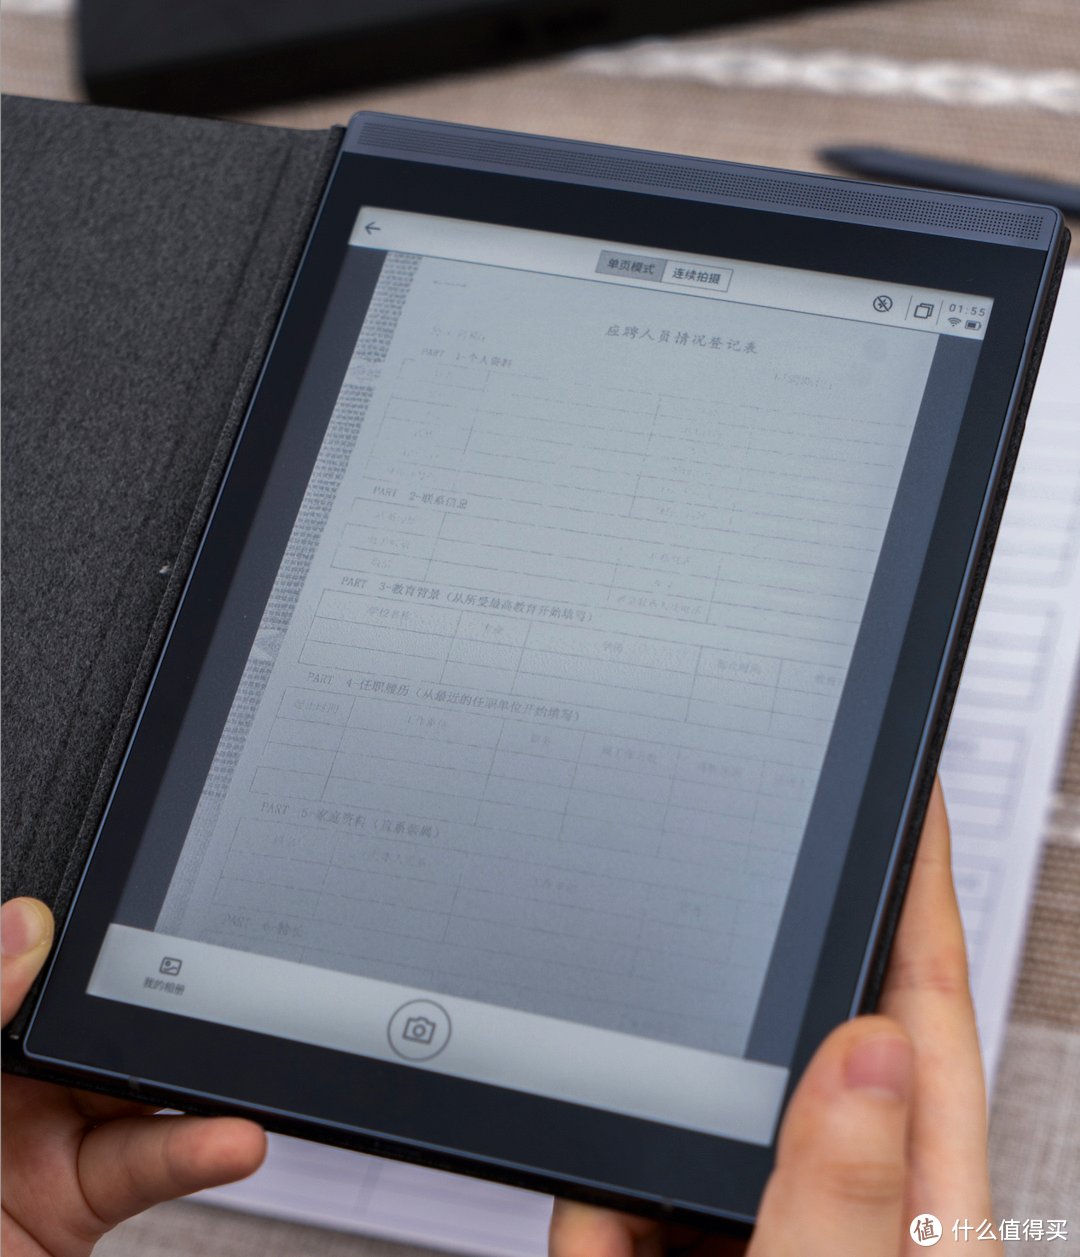 扫描摄像头可将纸质文档、手写笔记等扫描转电子文档